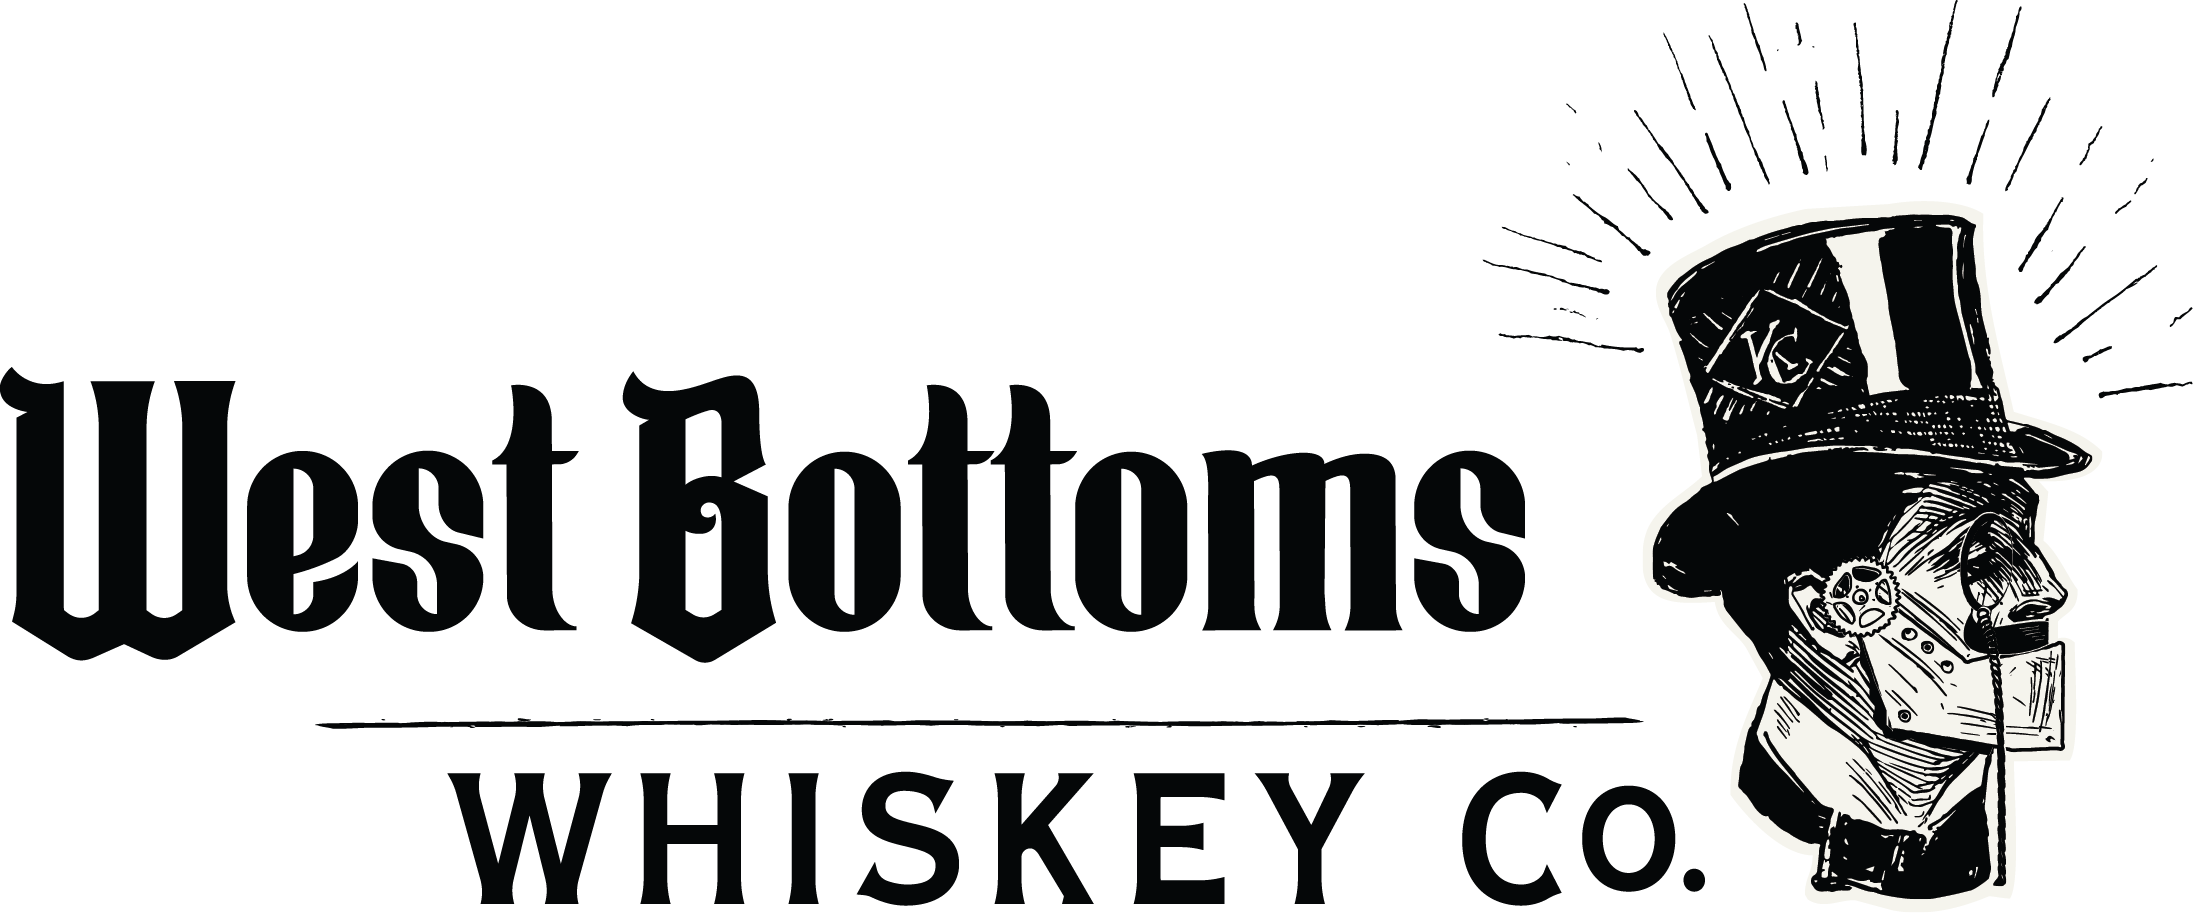 West Bottoms Whiskey, LLC logo 